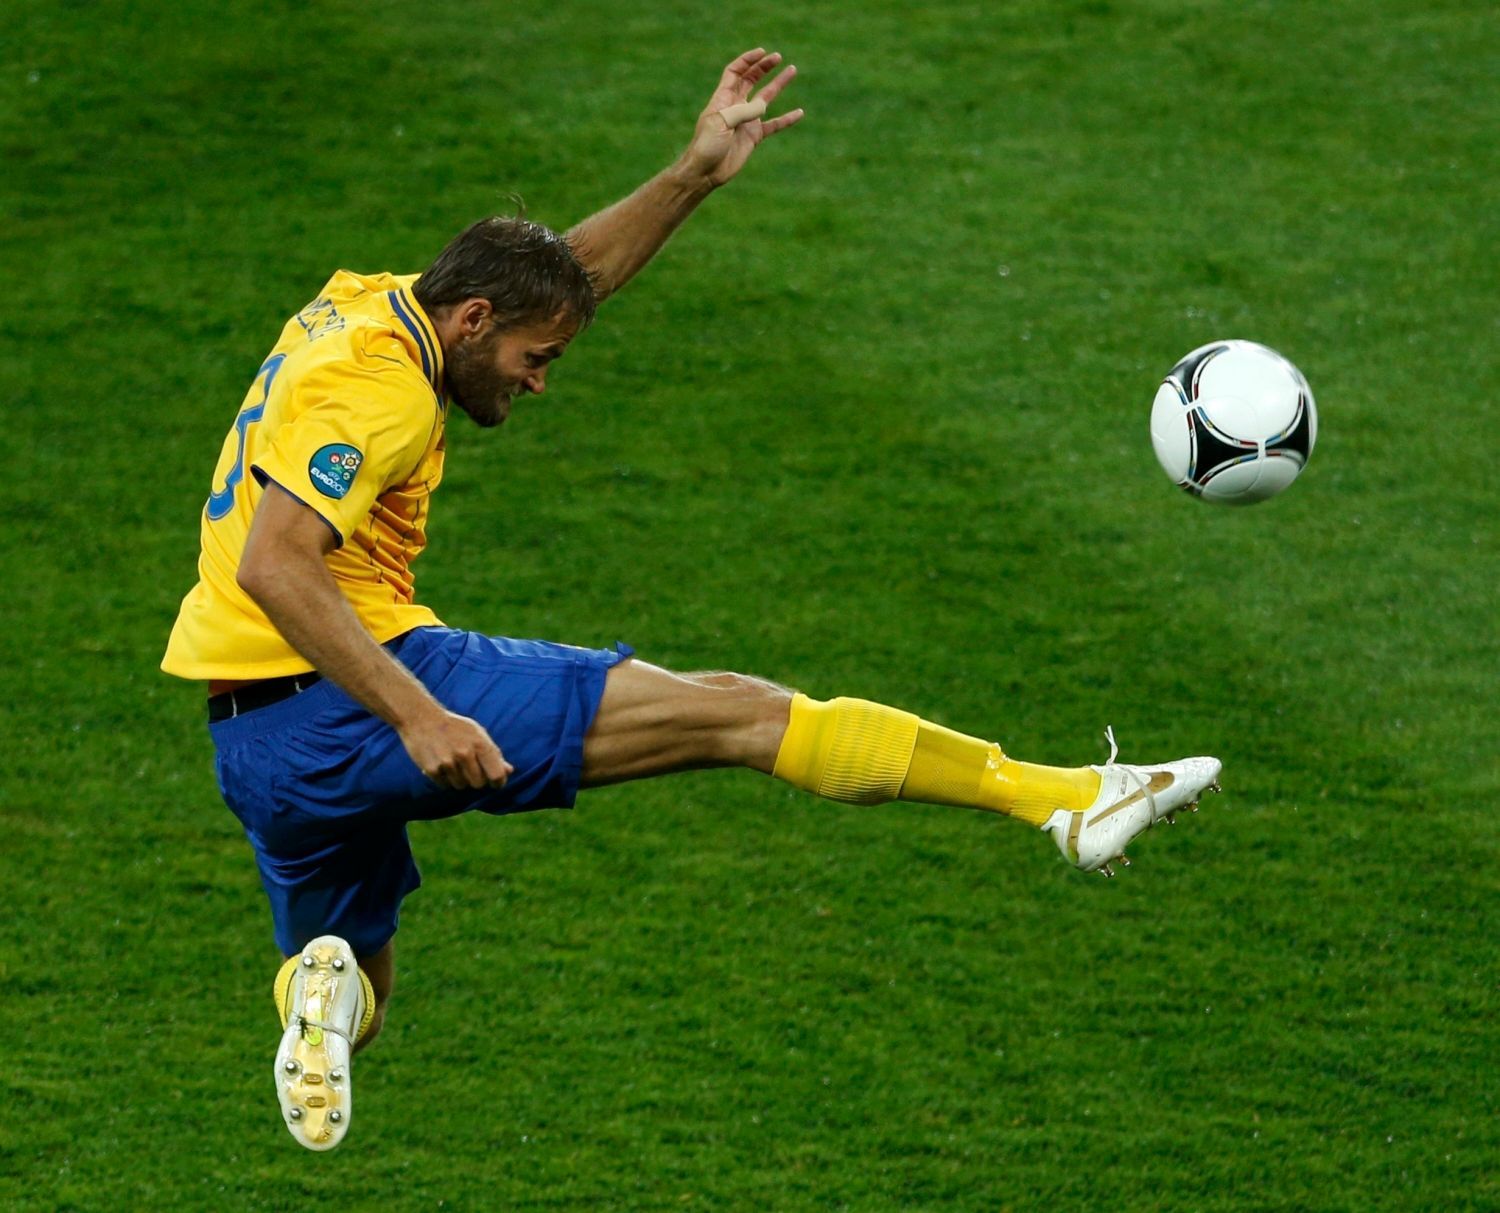 Švédský fotbalista Olof Mellberg odkopává míč v utkání proti Anglii ve skupině D na Euru 2012